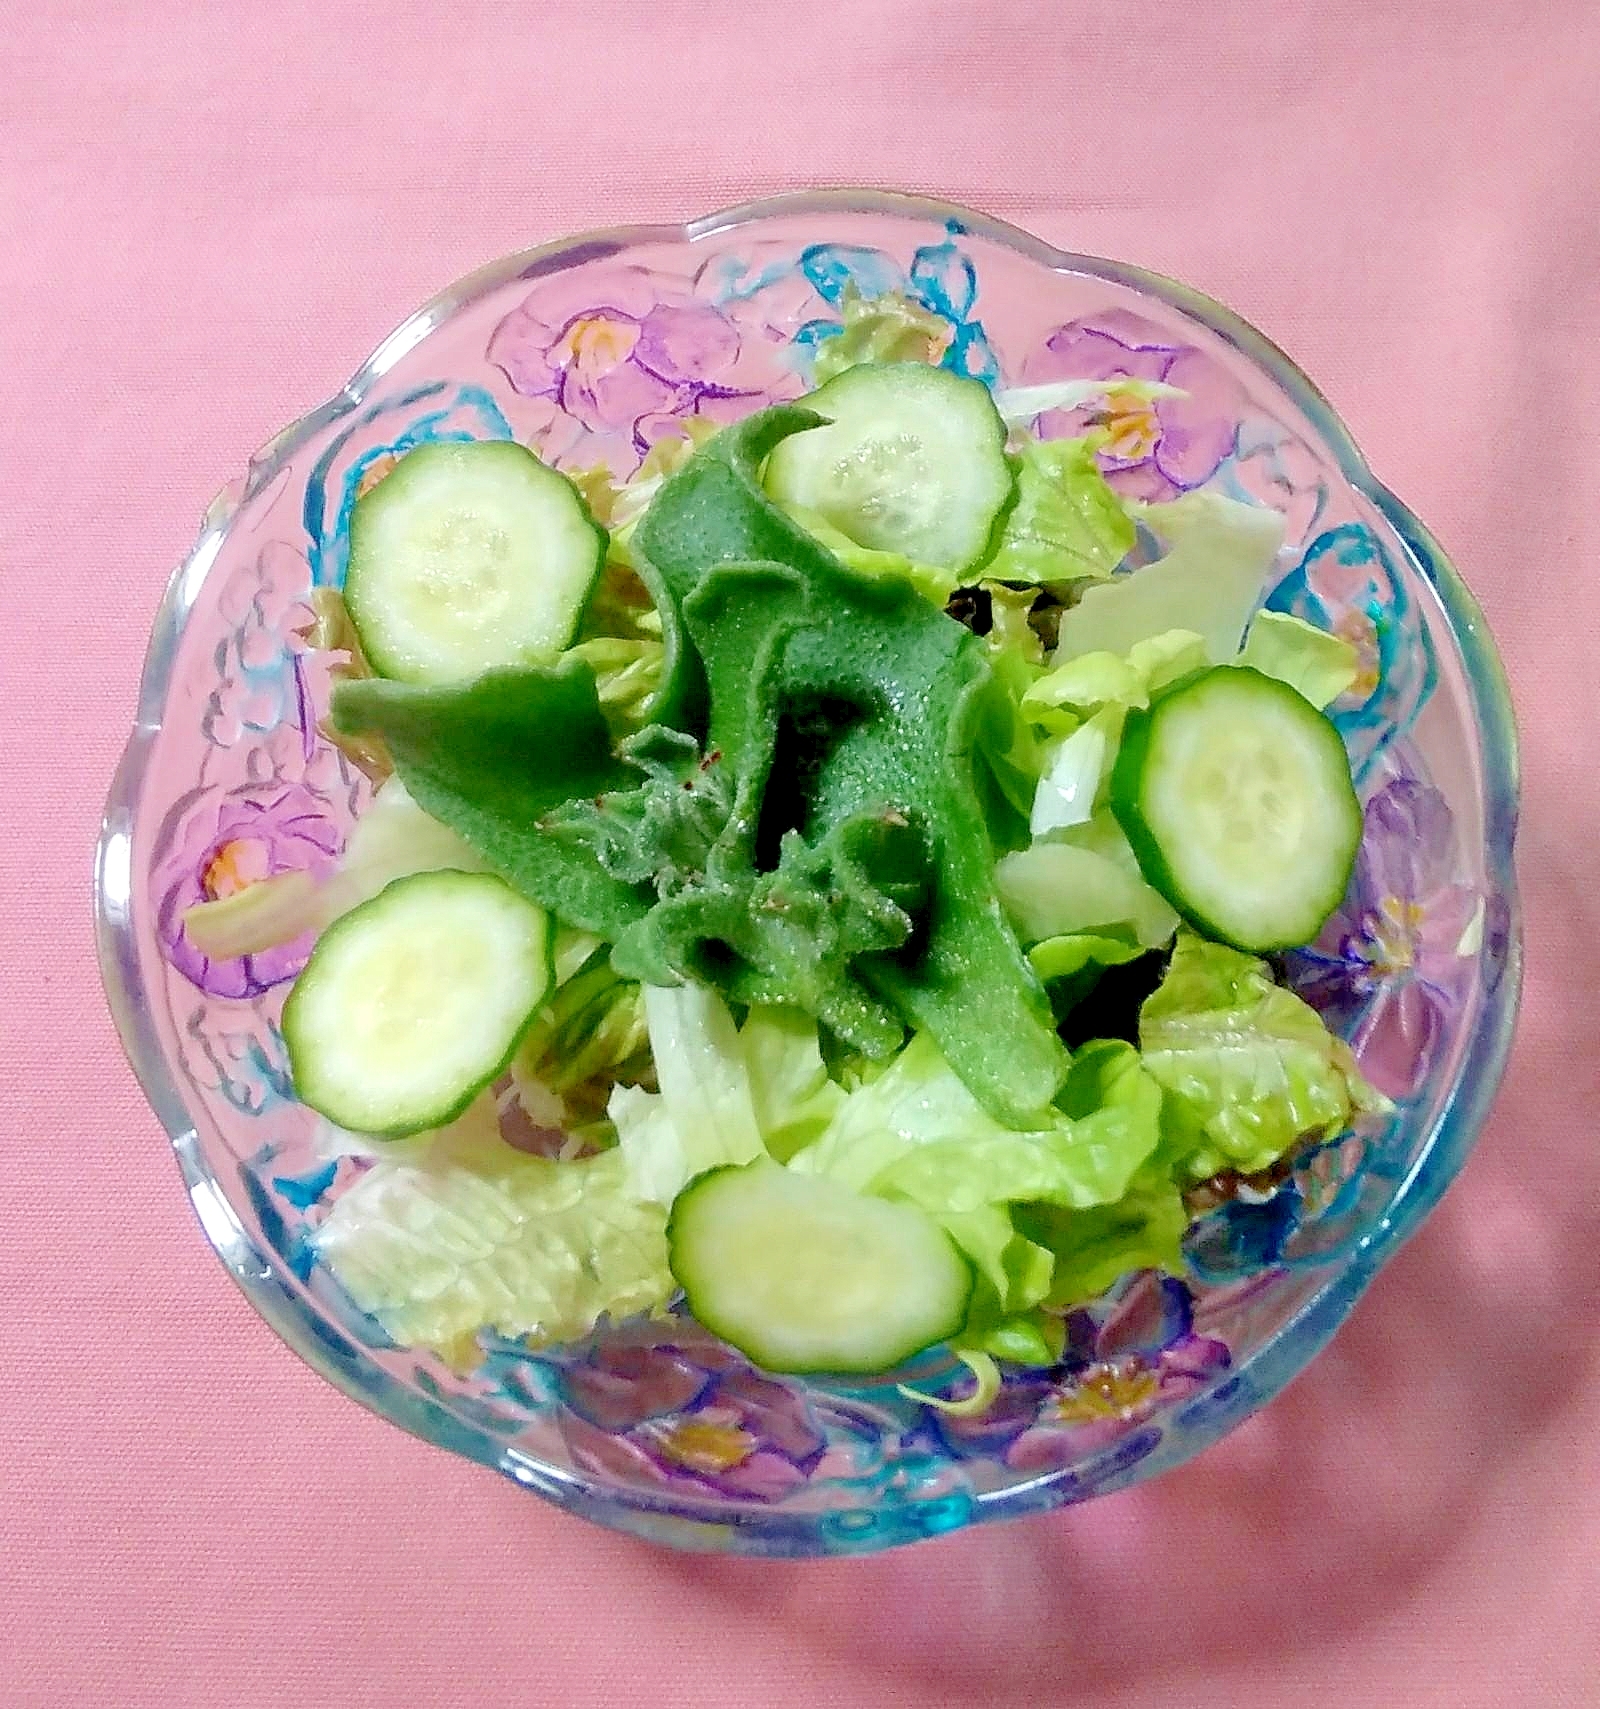 胡瓜とアイスプラントのサラダ